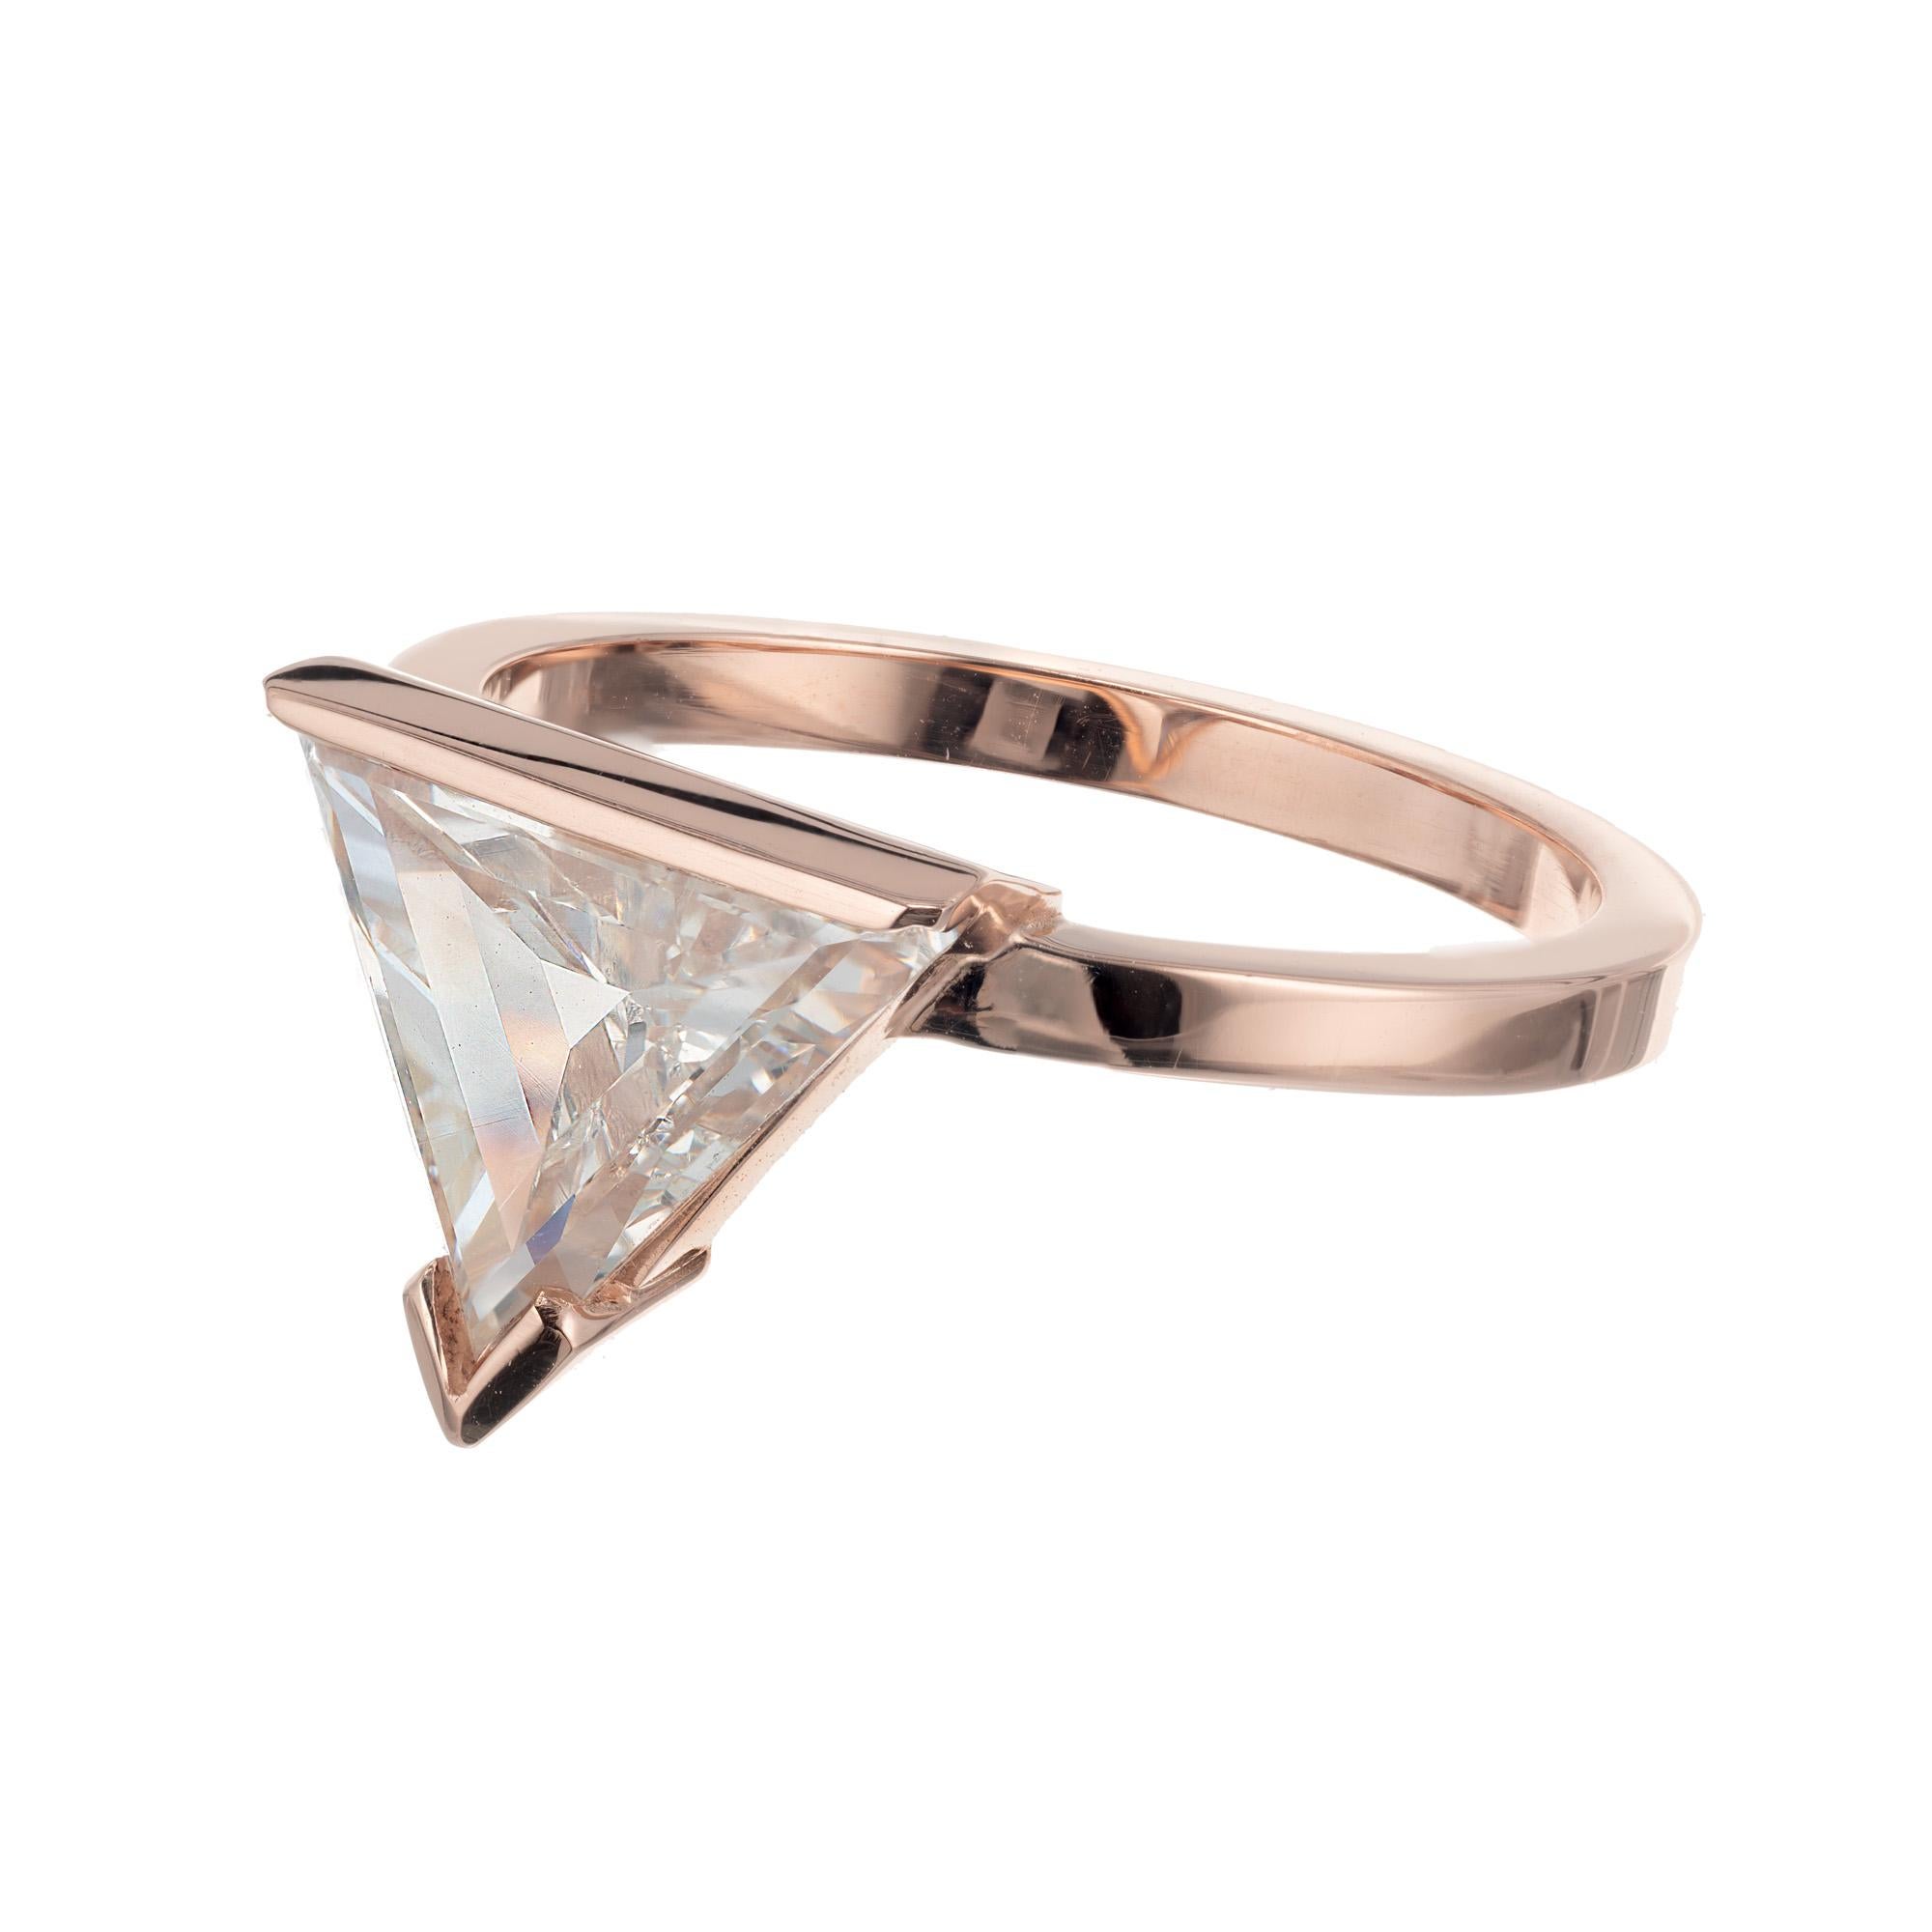 2.12 carat diamond ring price